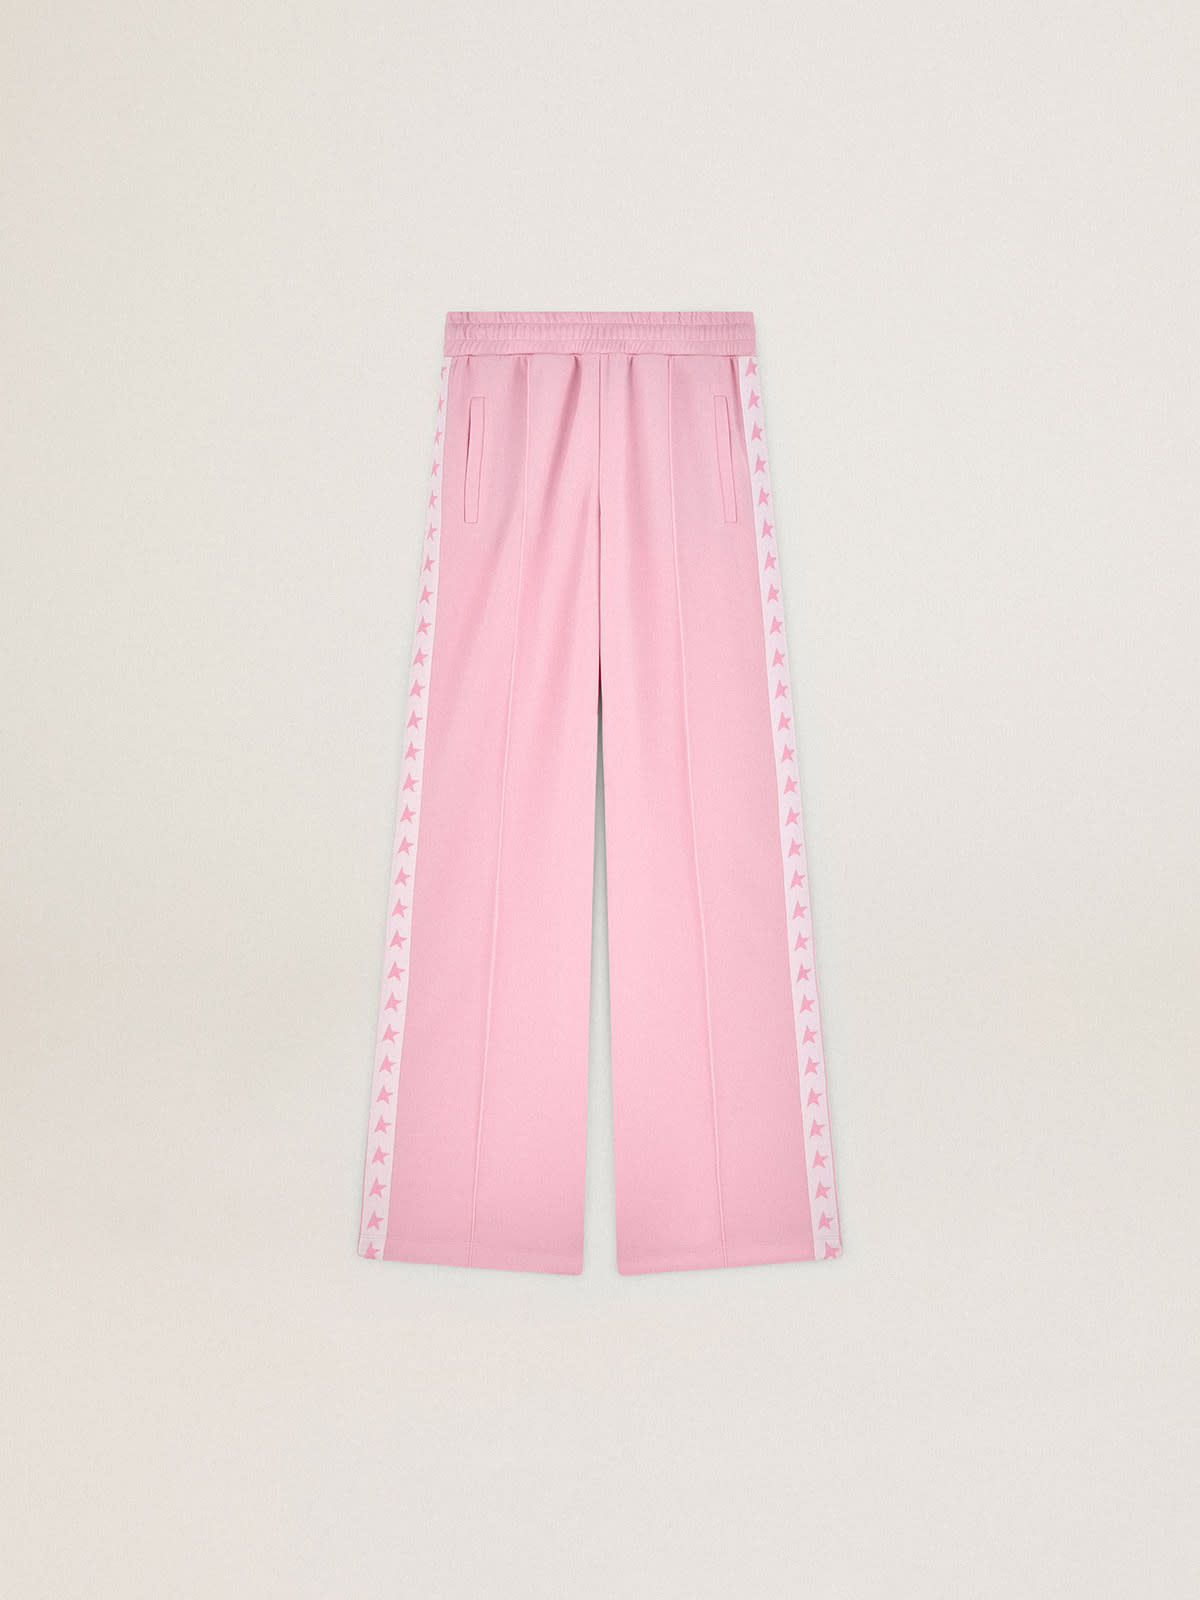 Golden Goose - Pantalón jogger Dorotea de la colección Star en color rosa con banda blanca y estrellas rosa en los lados in 